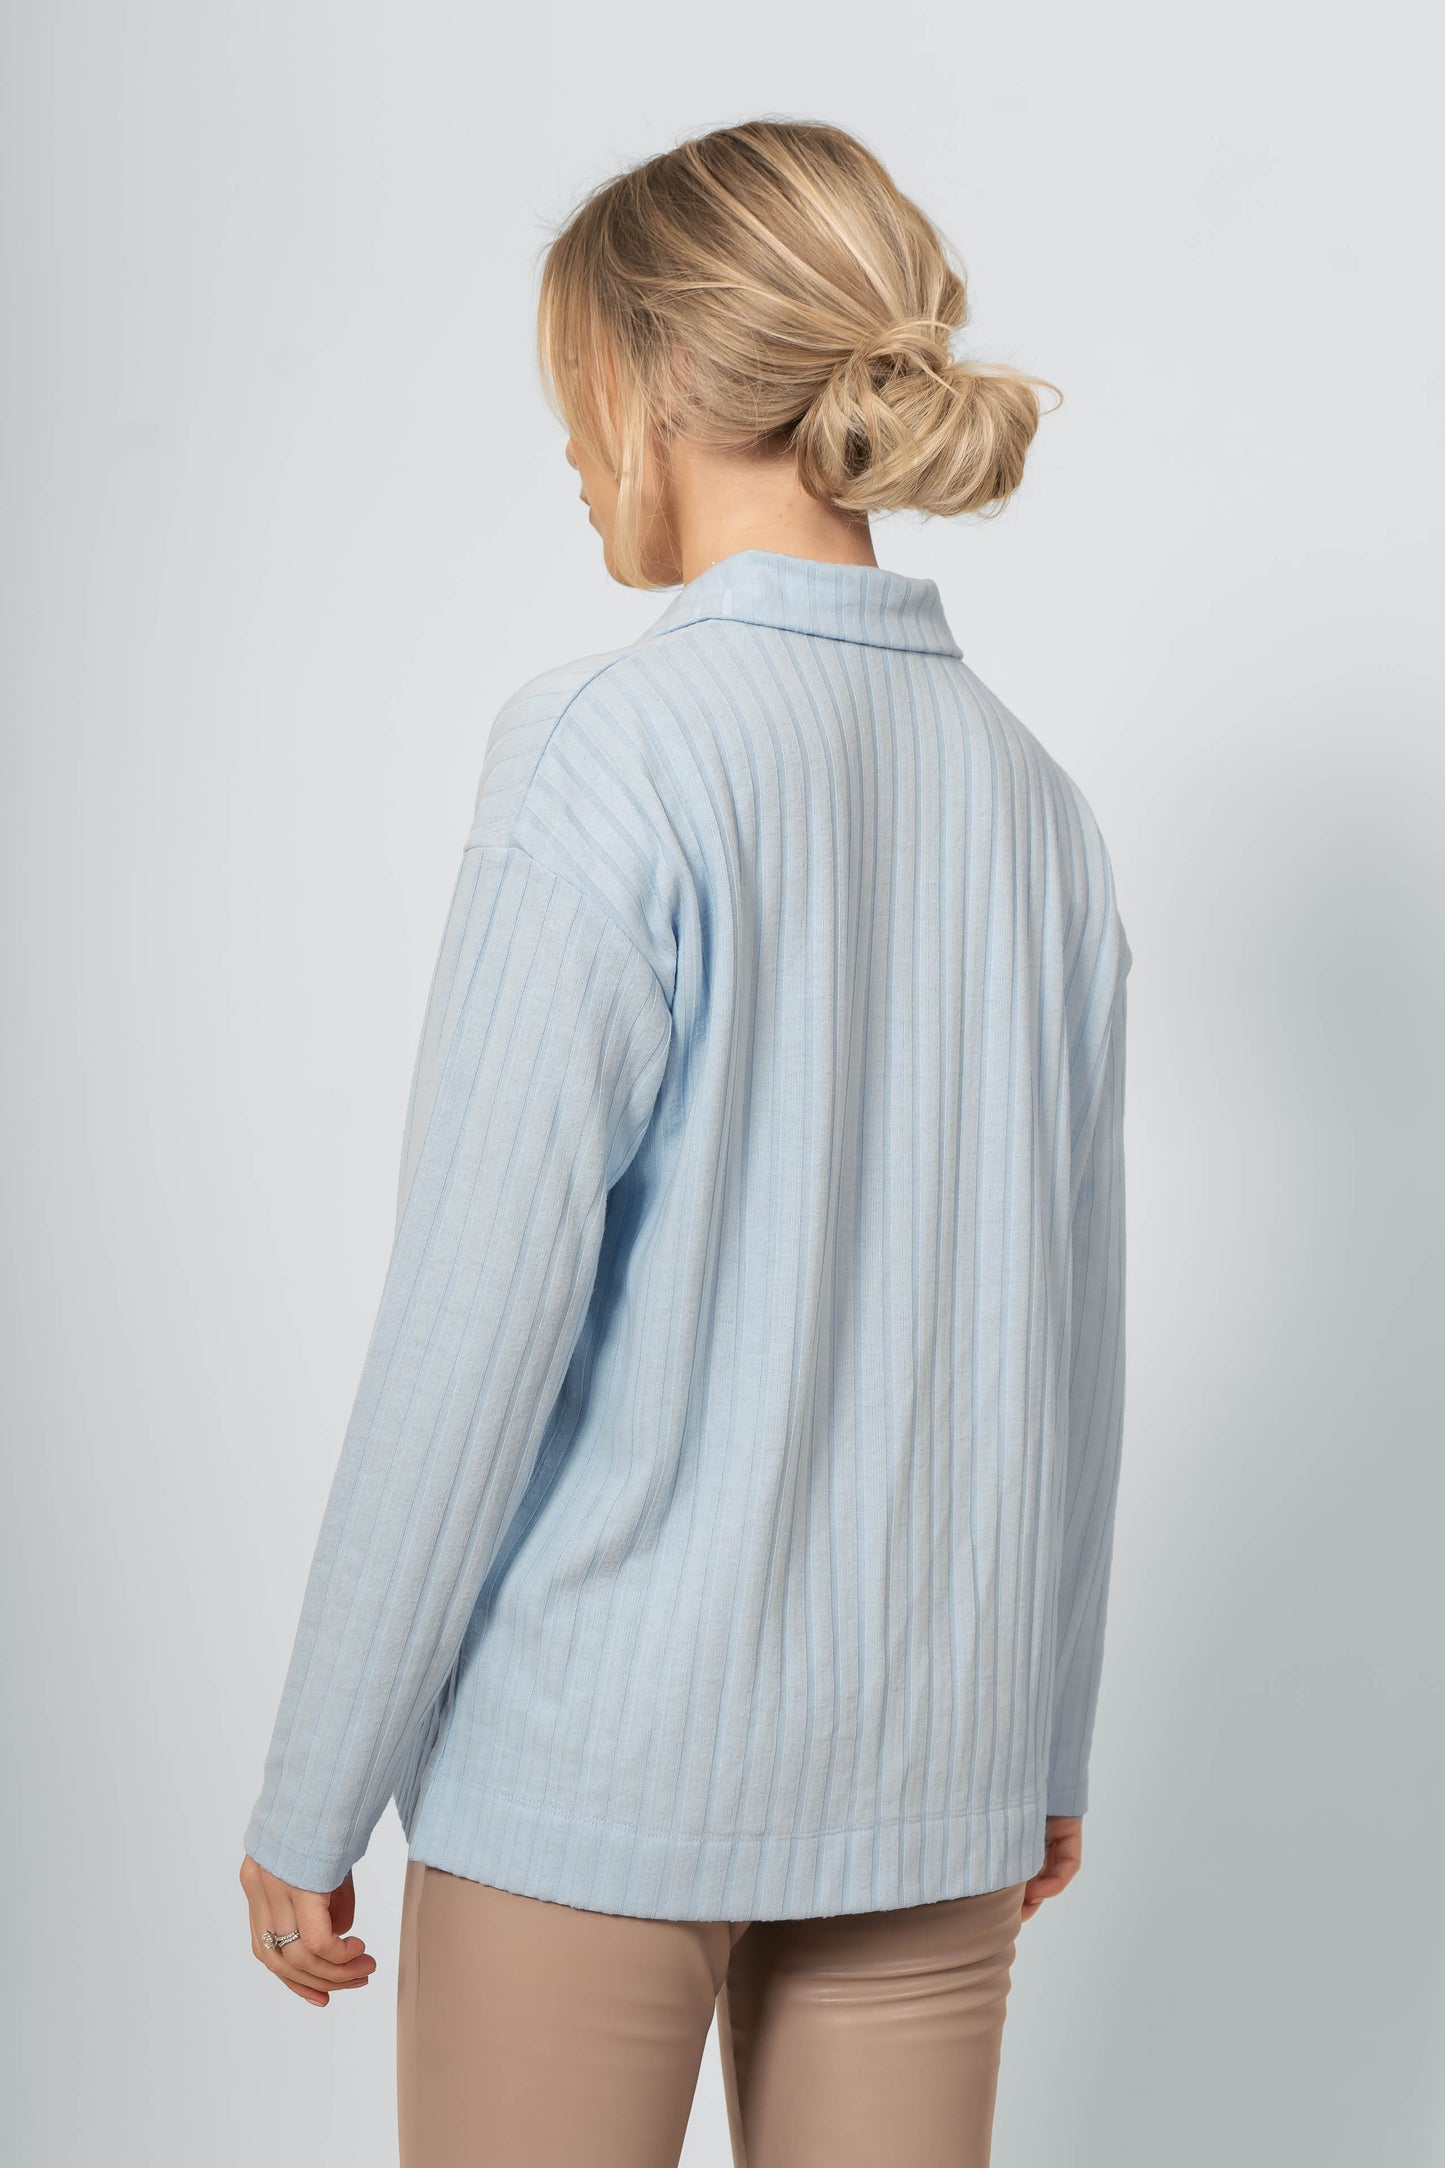 Ribbed Button Down Shirt - Light Blue - Sannealexandra - Model:Sanne